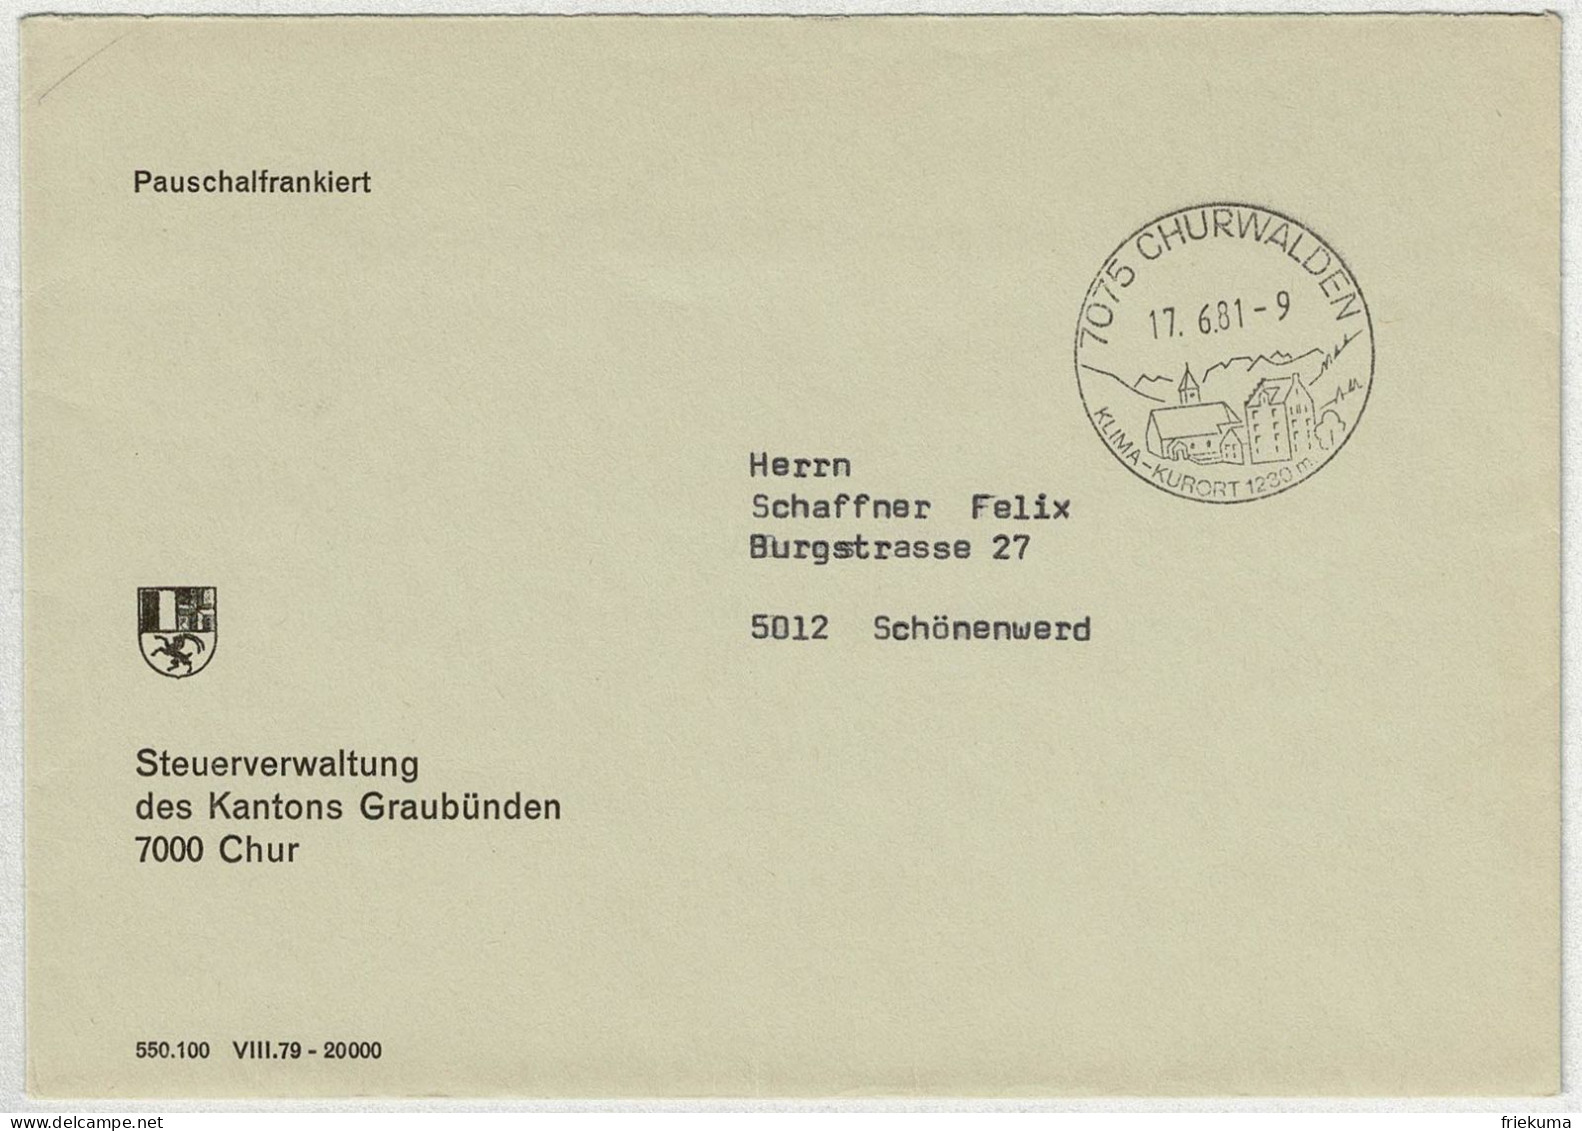 Schweiz 1981, Brief Pauschalfrankiert Churwalden - Schönenwerd - Poststempel